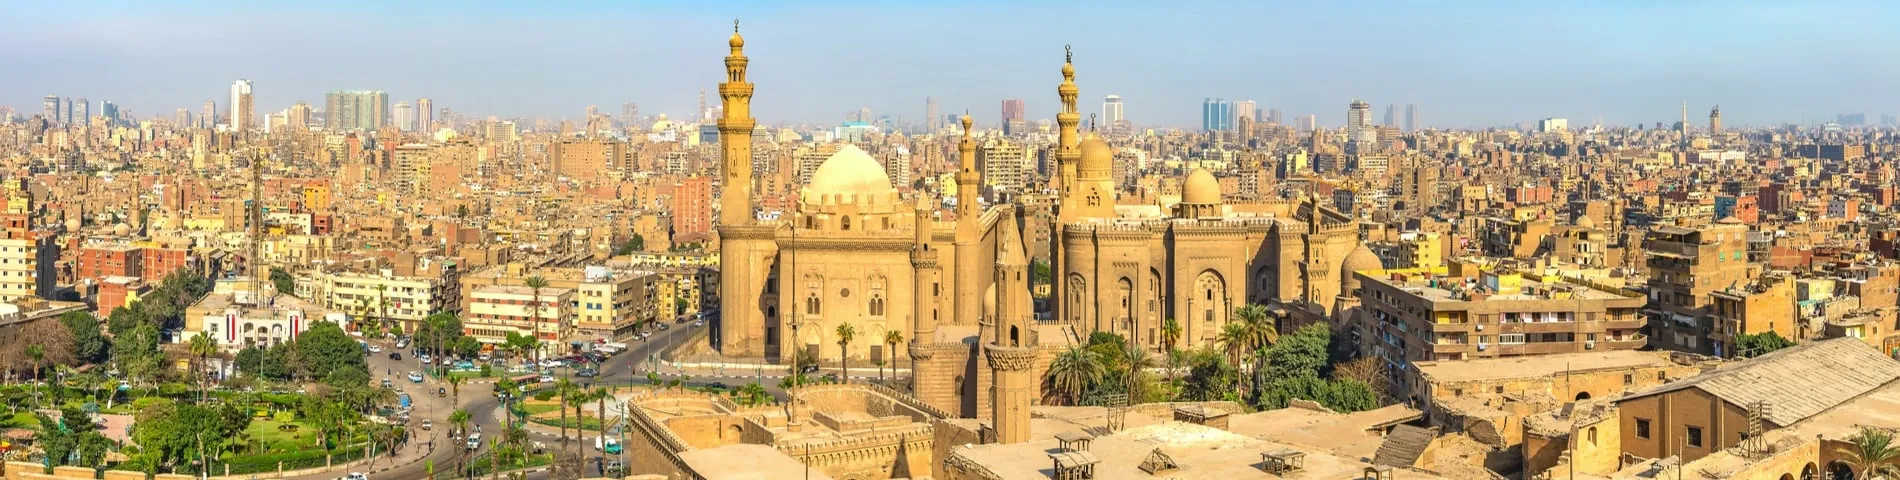 Caïro - 